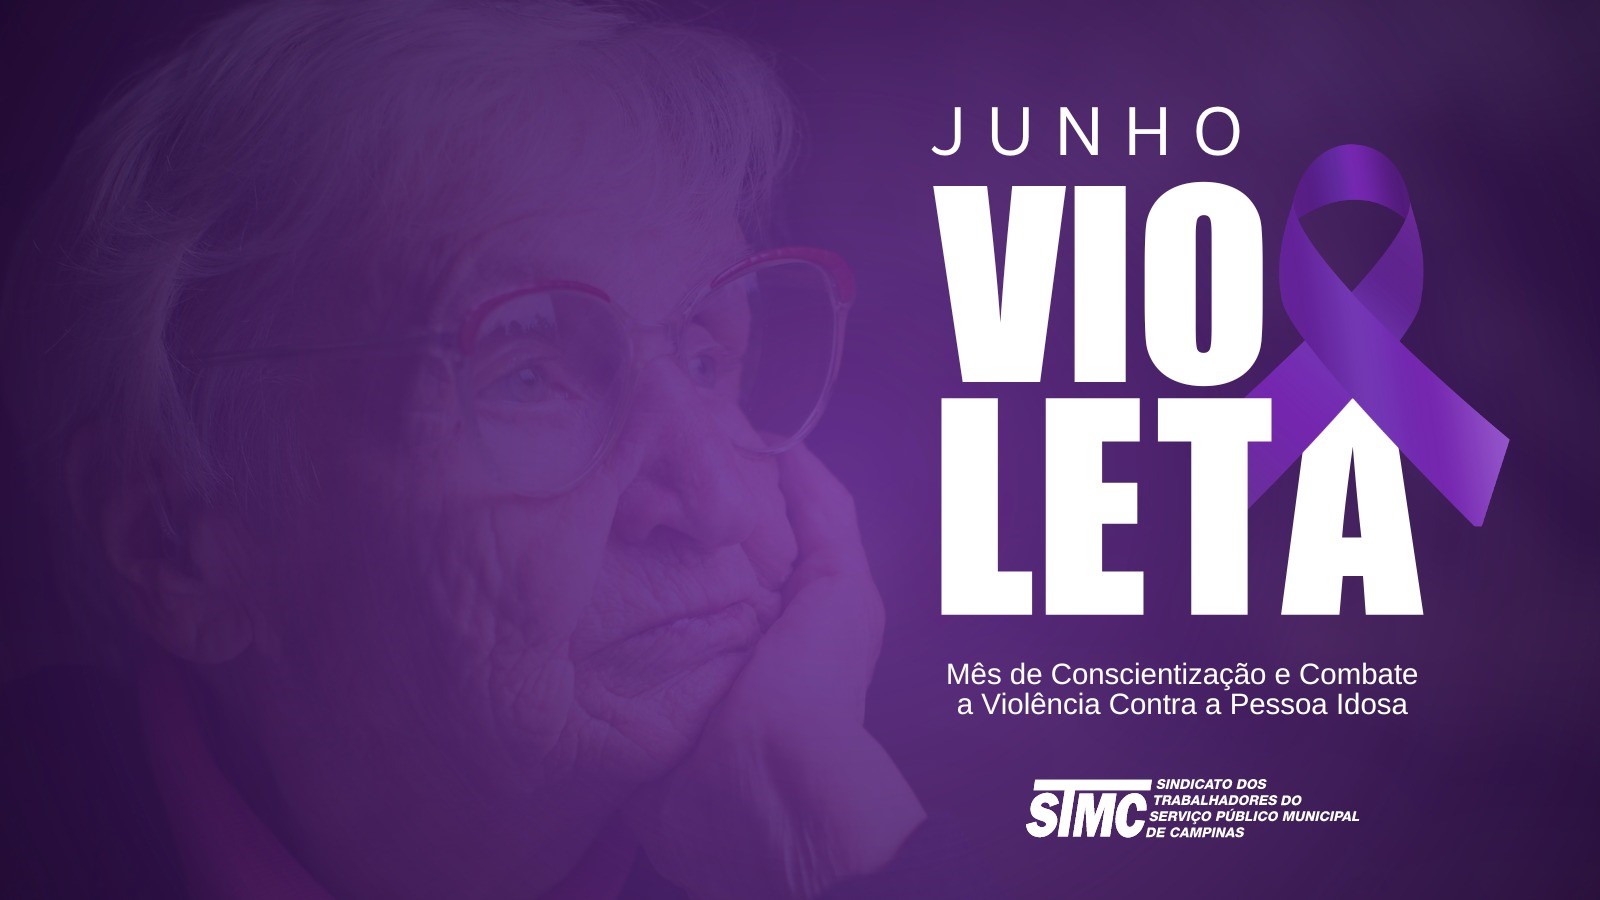 O STMC e a Casa dos Aposentados estão engajados nas ações do Junho Violeta, que é o Mês de Conscientização e Combate à Violência Contra a Pessoa Idosa.